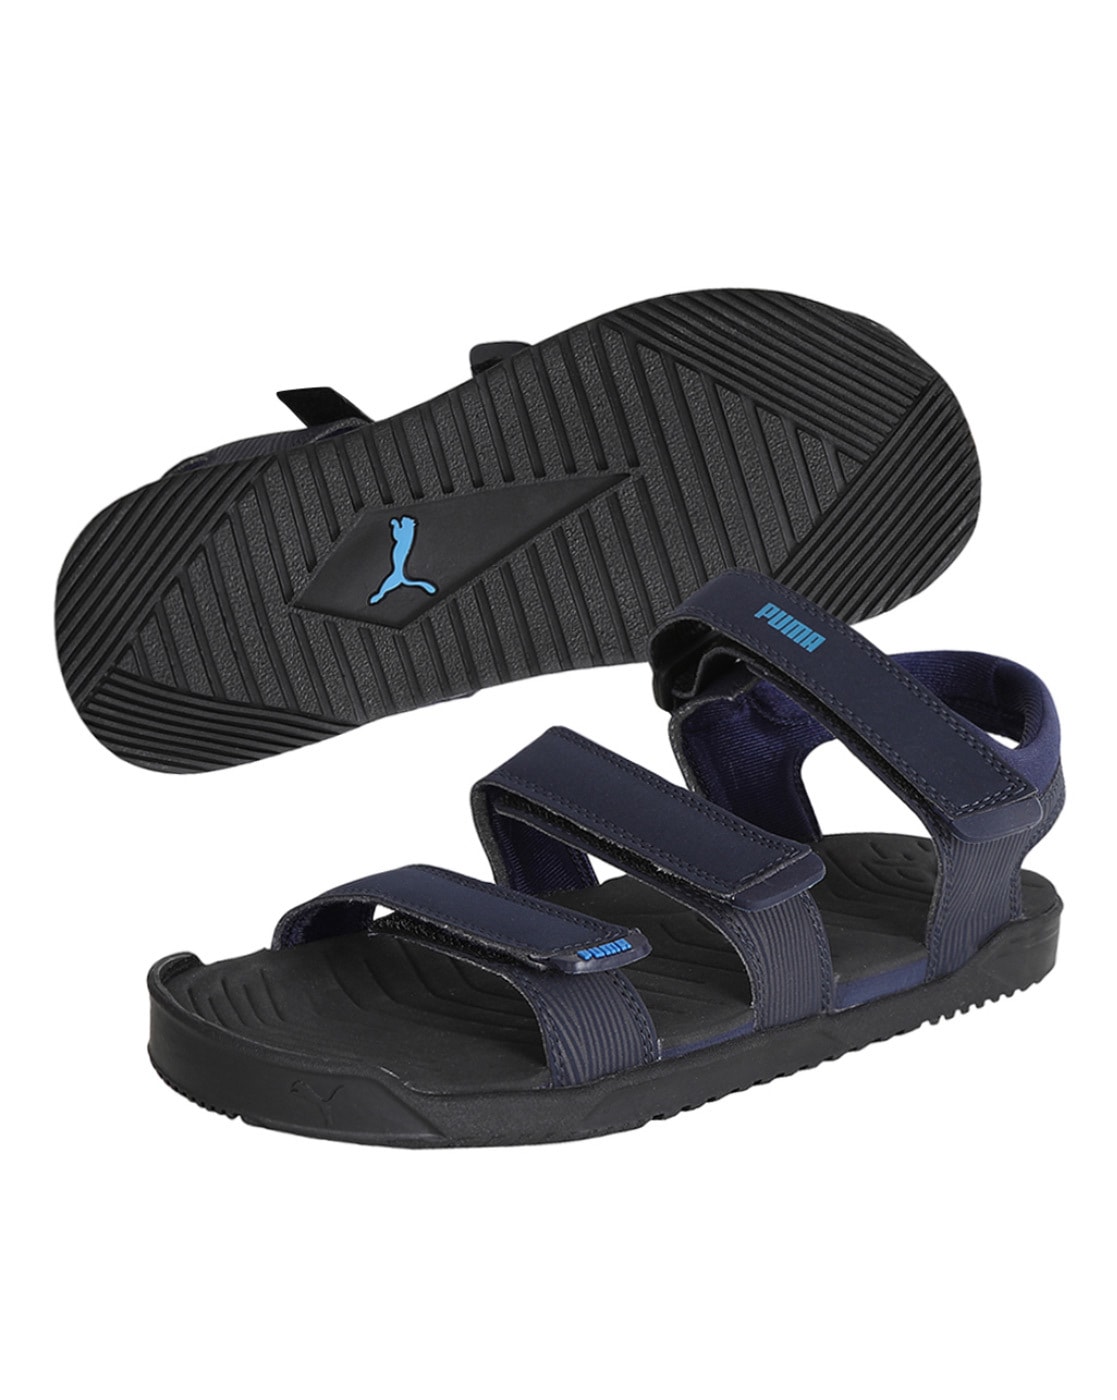 puma sandals latest models